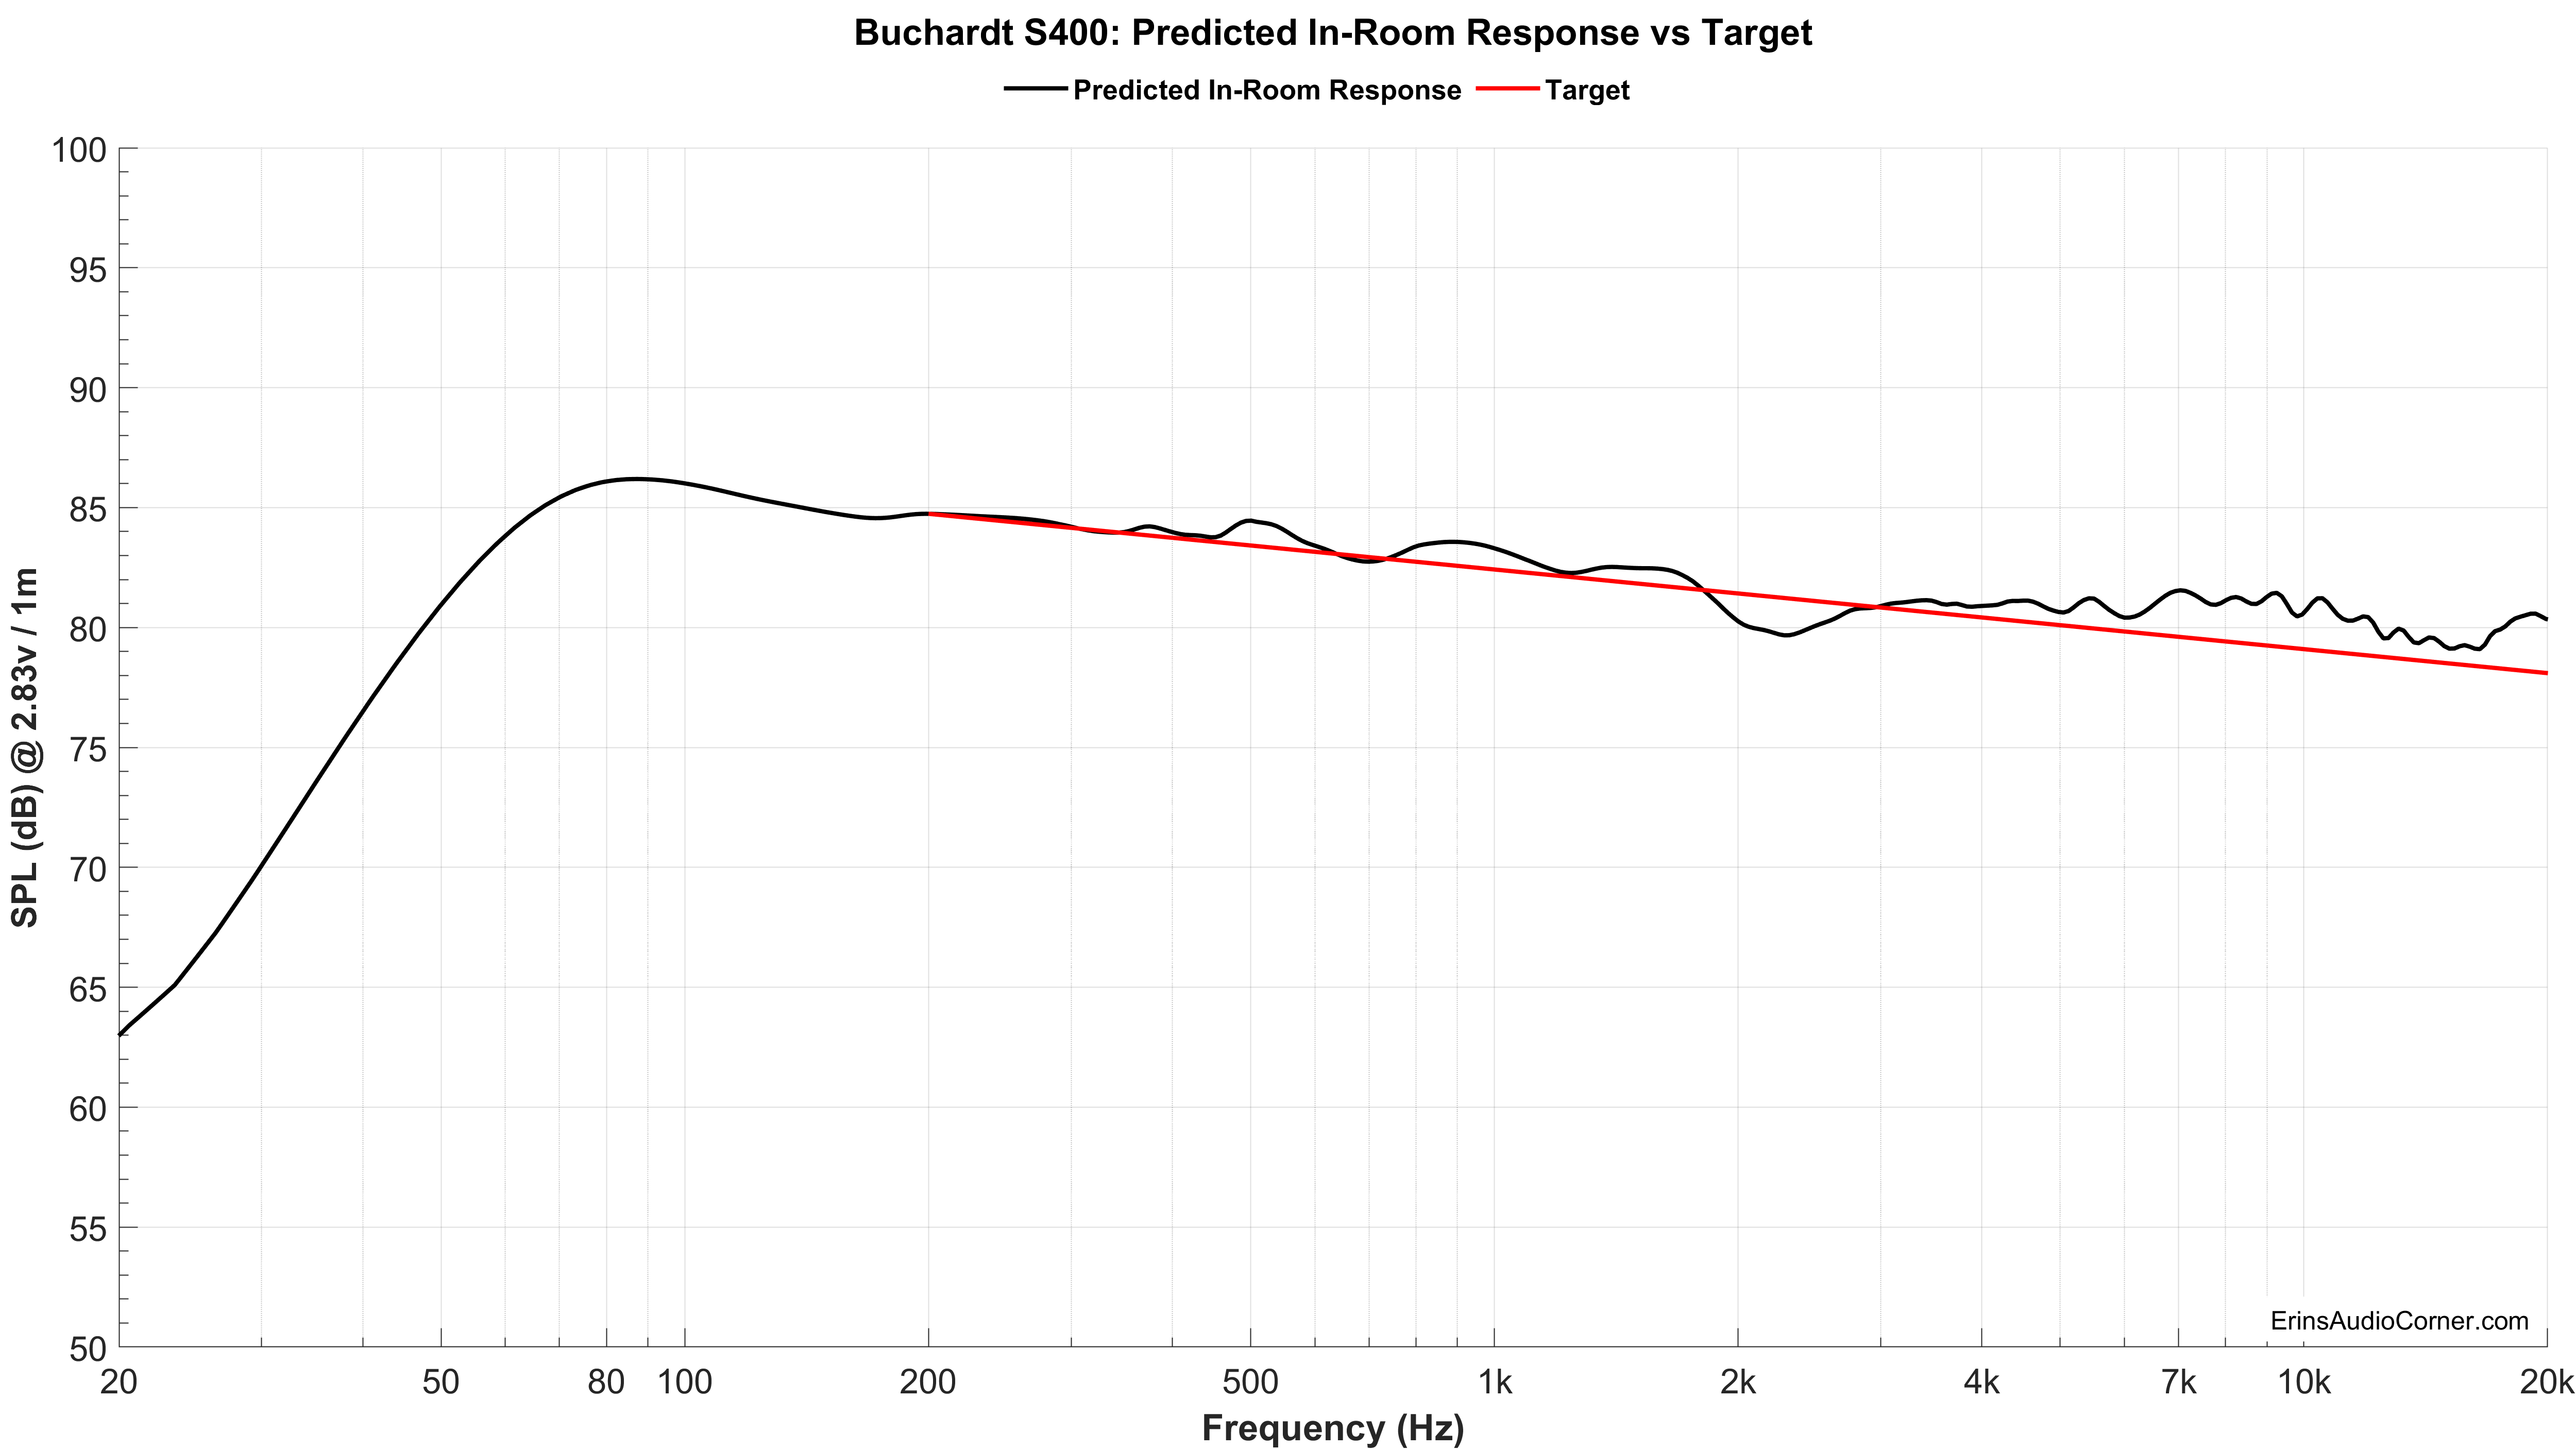 Buchardt S400 Predicted vs Target.png